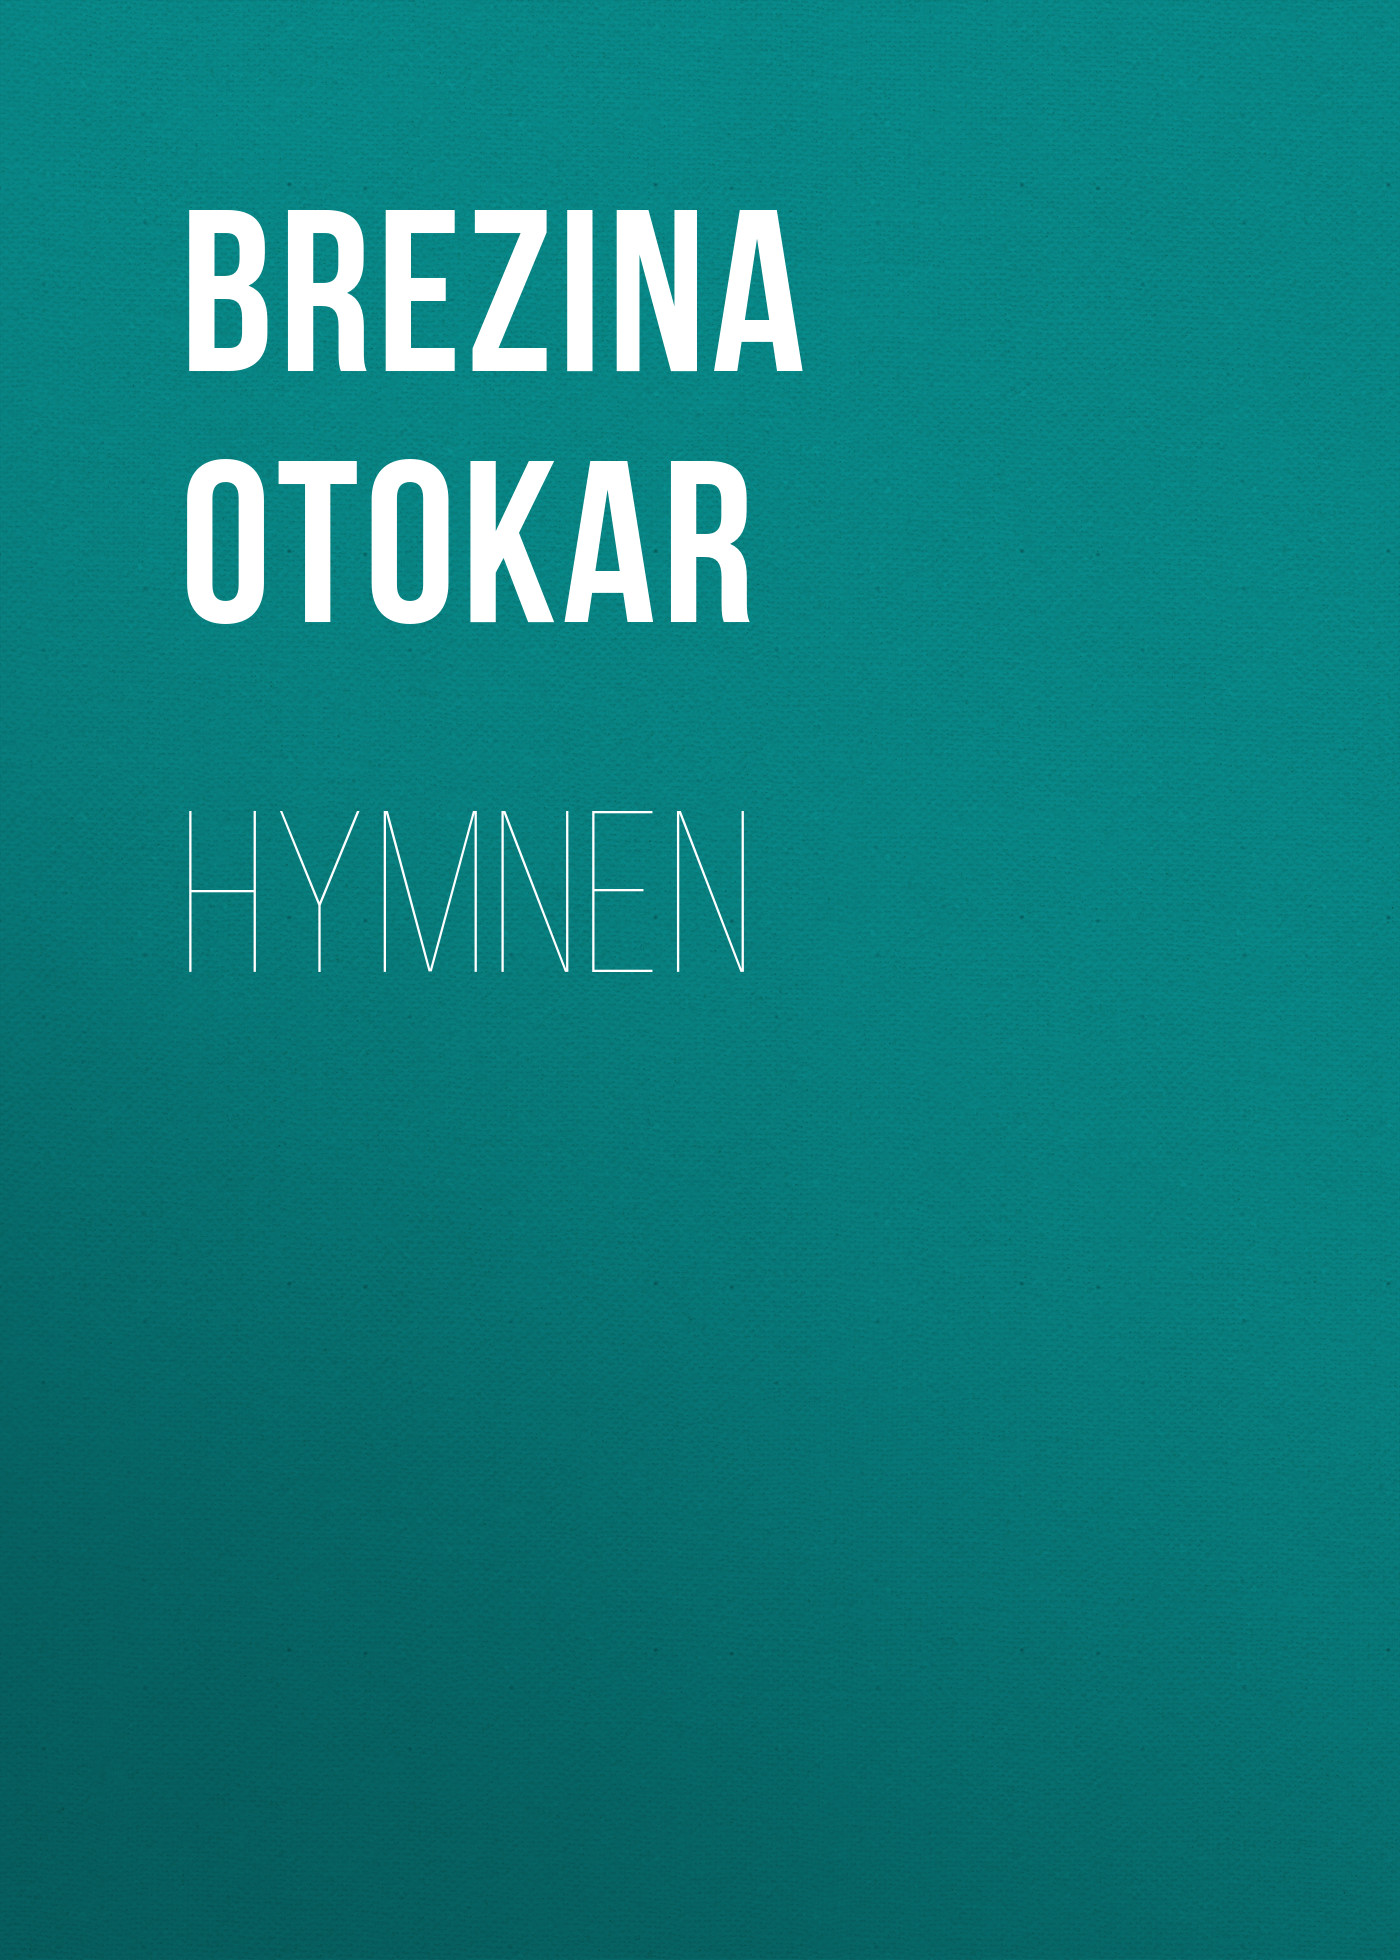 Книга Hymnen из серии , созданная Otokar Brezina, может относится к жанру Зарубежная старинная литература, Зарубежная классика, Зарубежные стихи. Стоимость электронной книги Hymnen с идентификатором 24174628 составляет 0 руб.